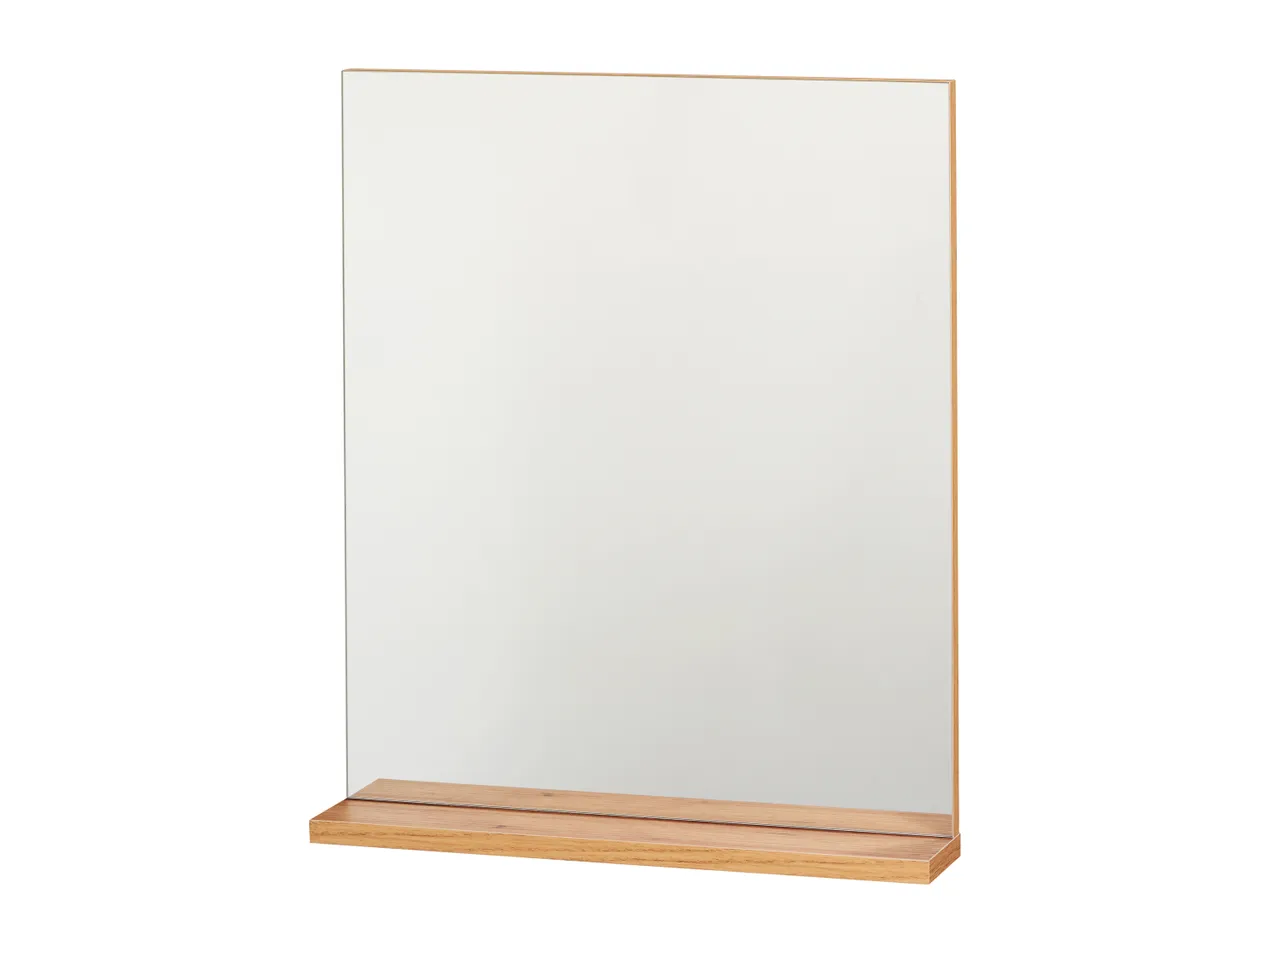 Specchio da parete , prezzo 29.99 EUR 
Specchio da parete 
- Con ripiano effetto ...